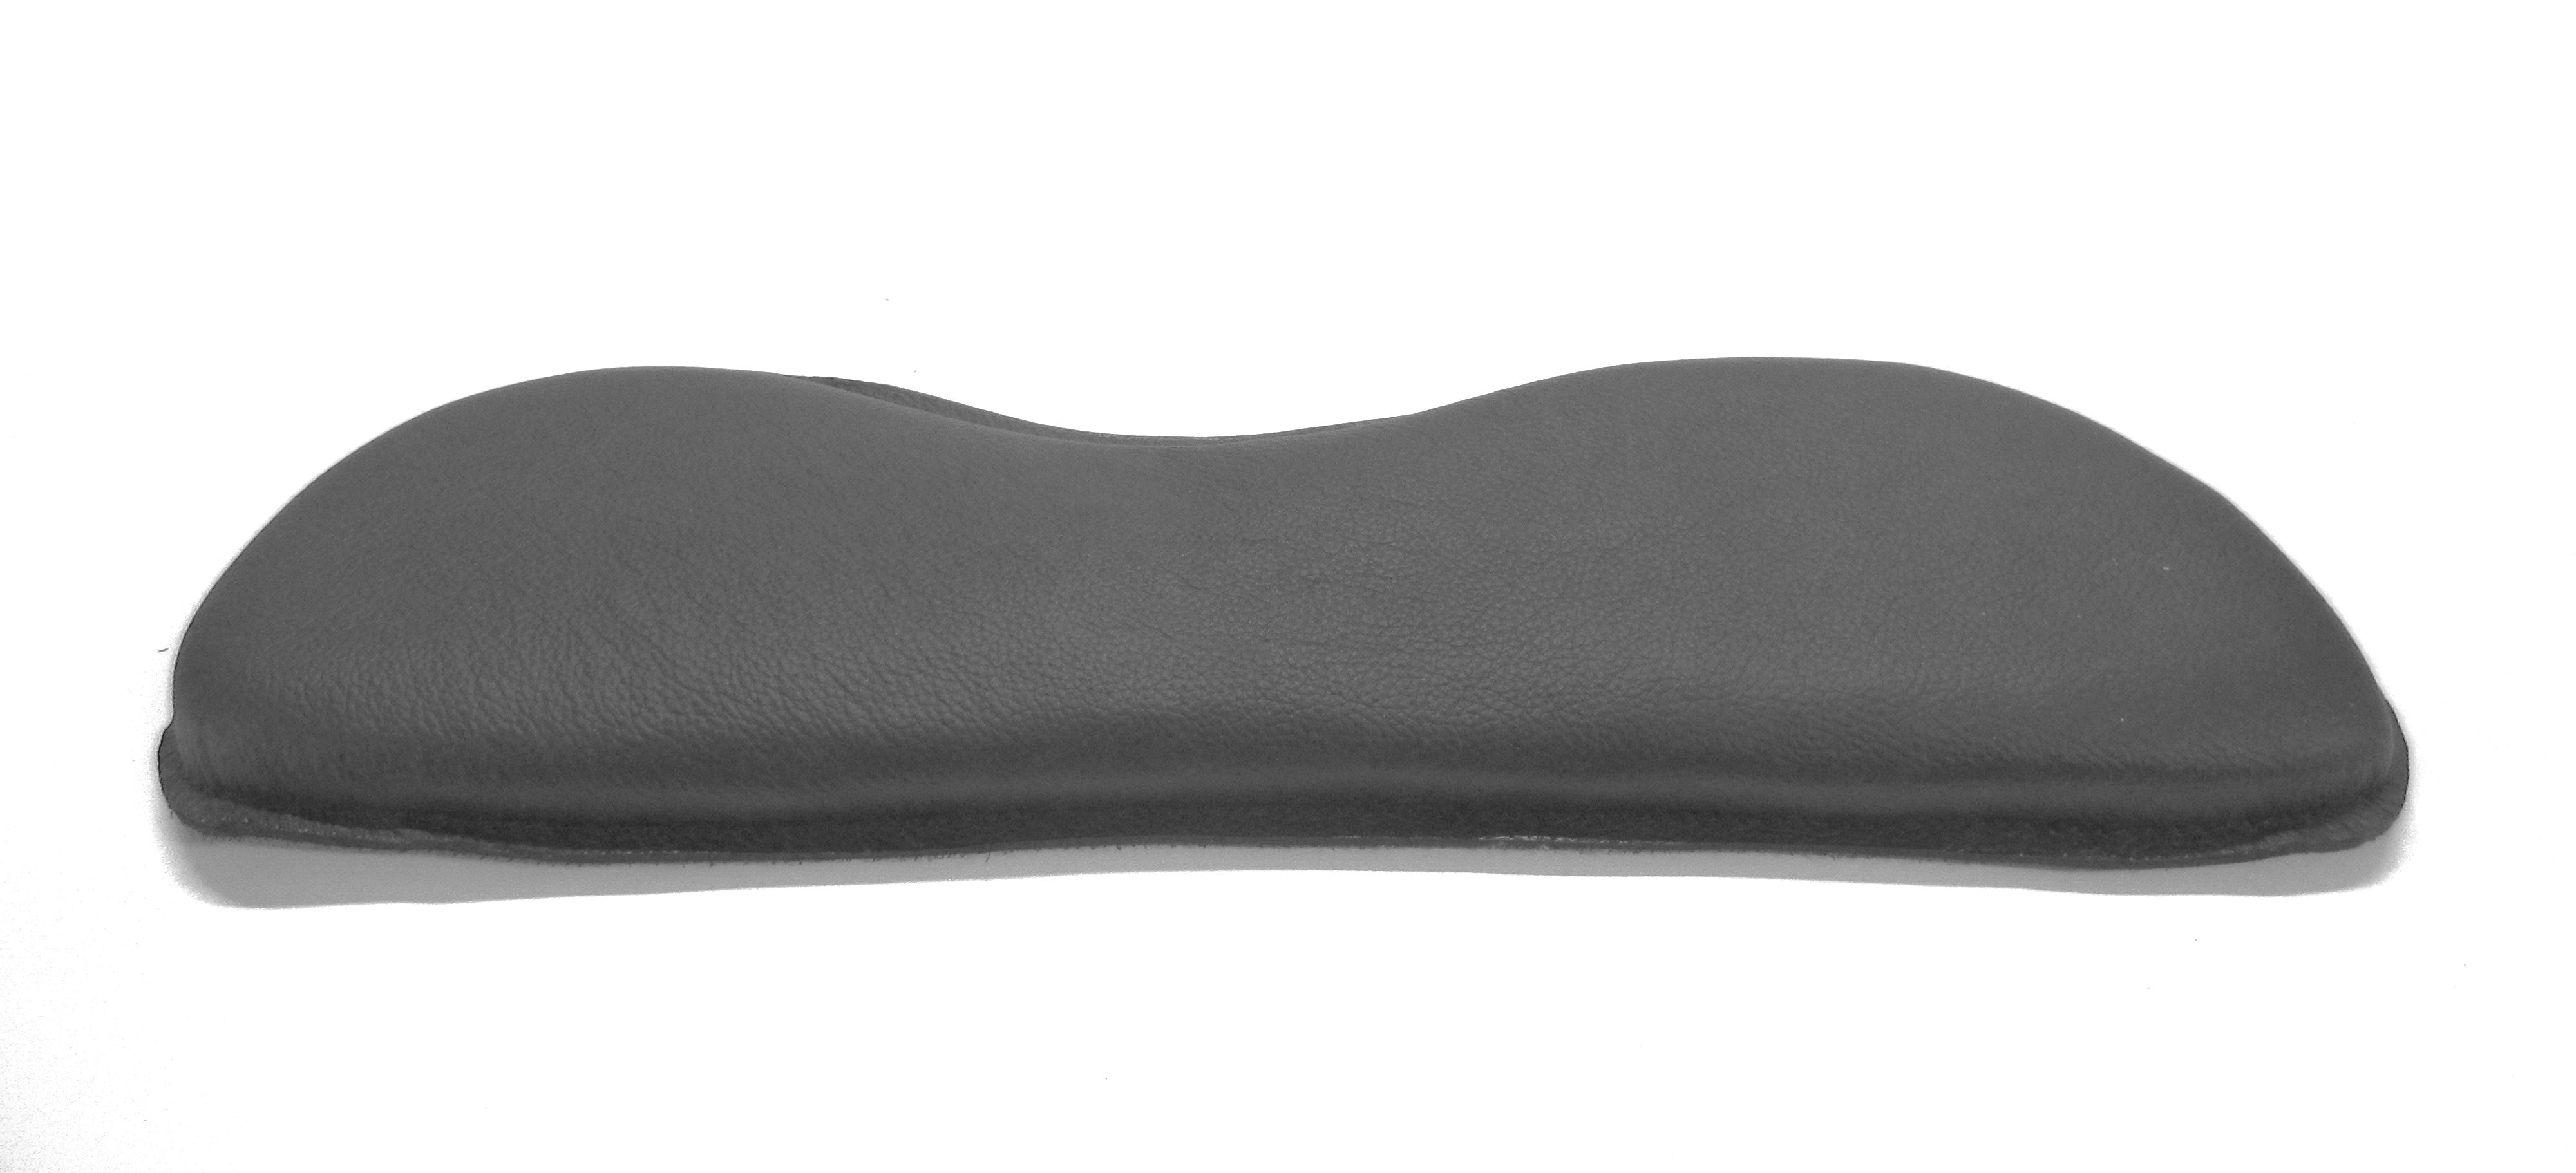 4 cm Velcro cushion standard shape; Saddle cushion/Velcro panels